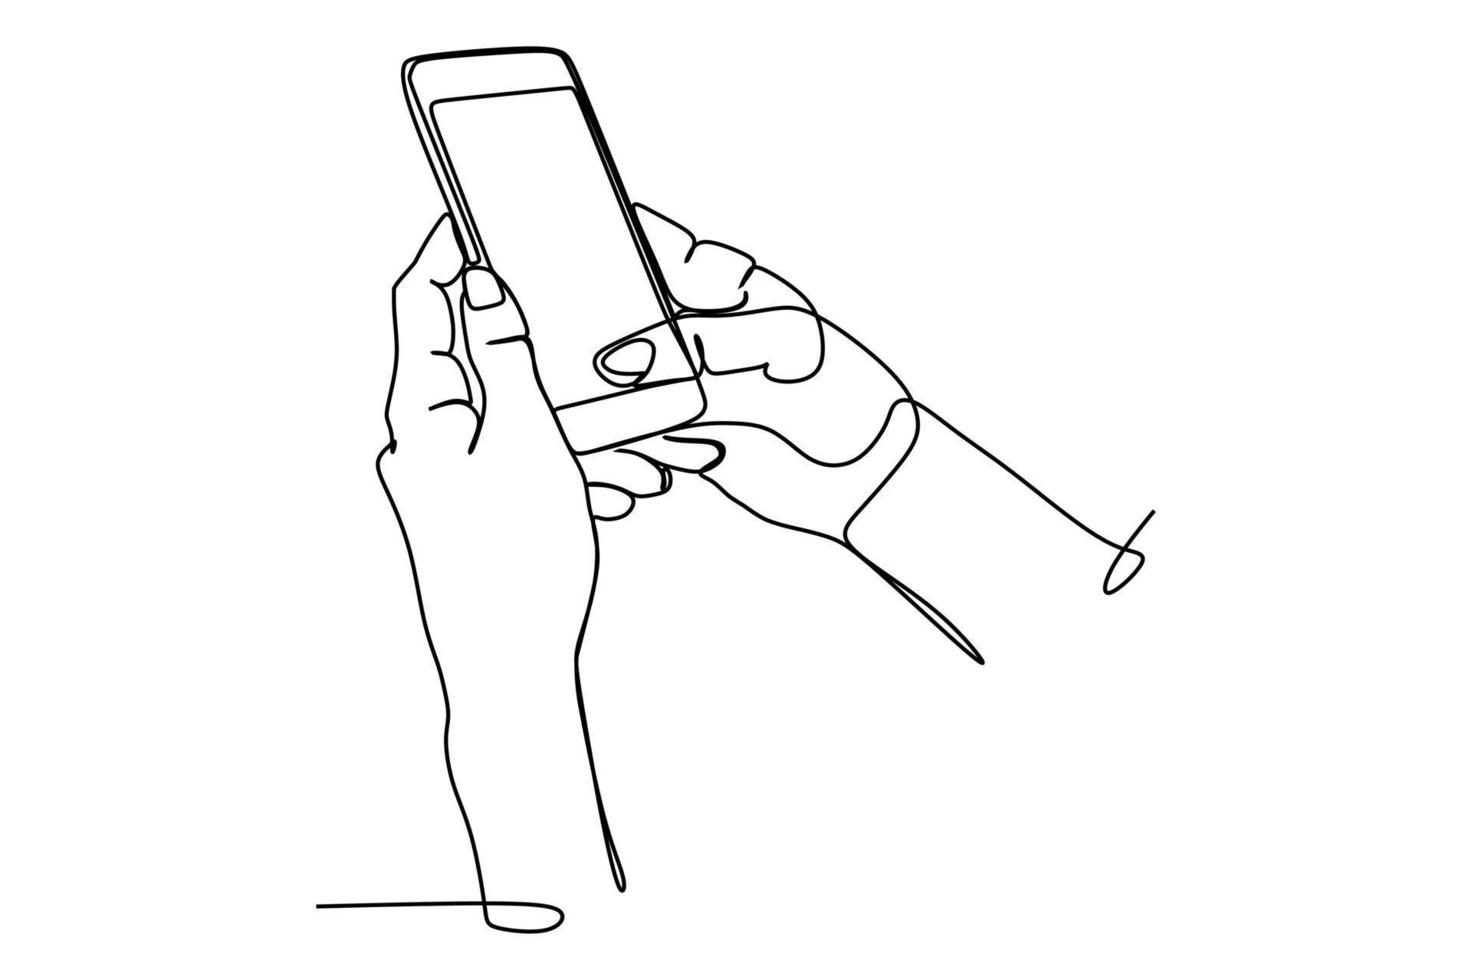 continue één lijntekening van iemands hand die het smartphonescherm aanraakt. handgetekende stijllijntekening voor technologie en bedrijfsmodel en concept. vector